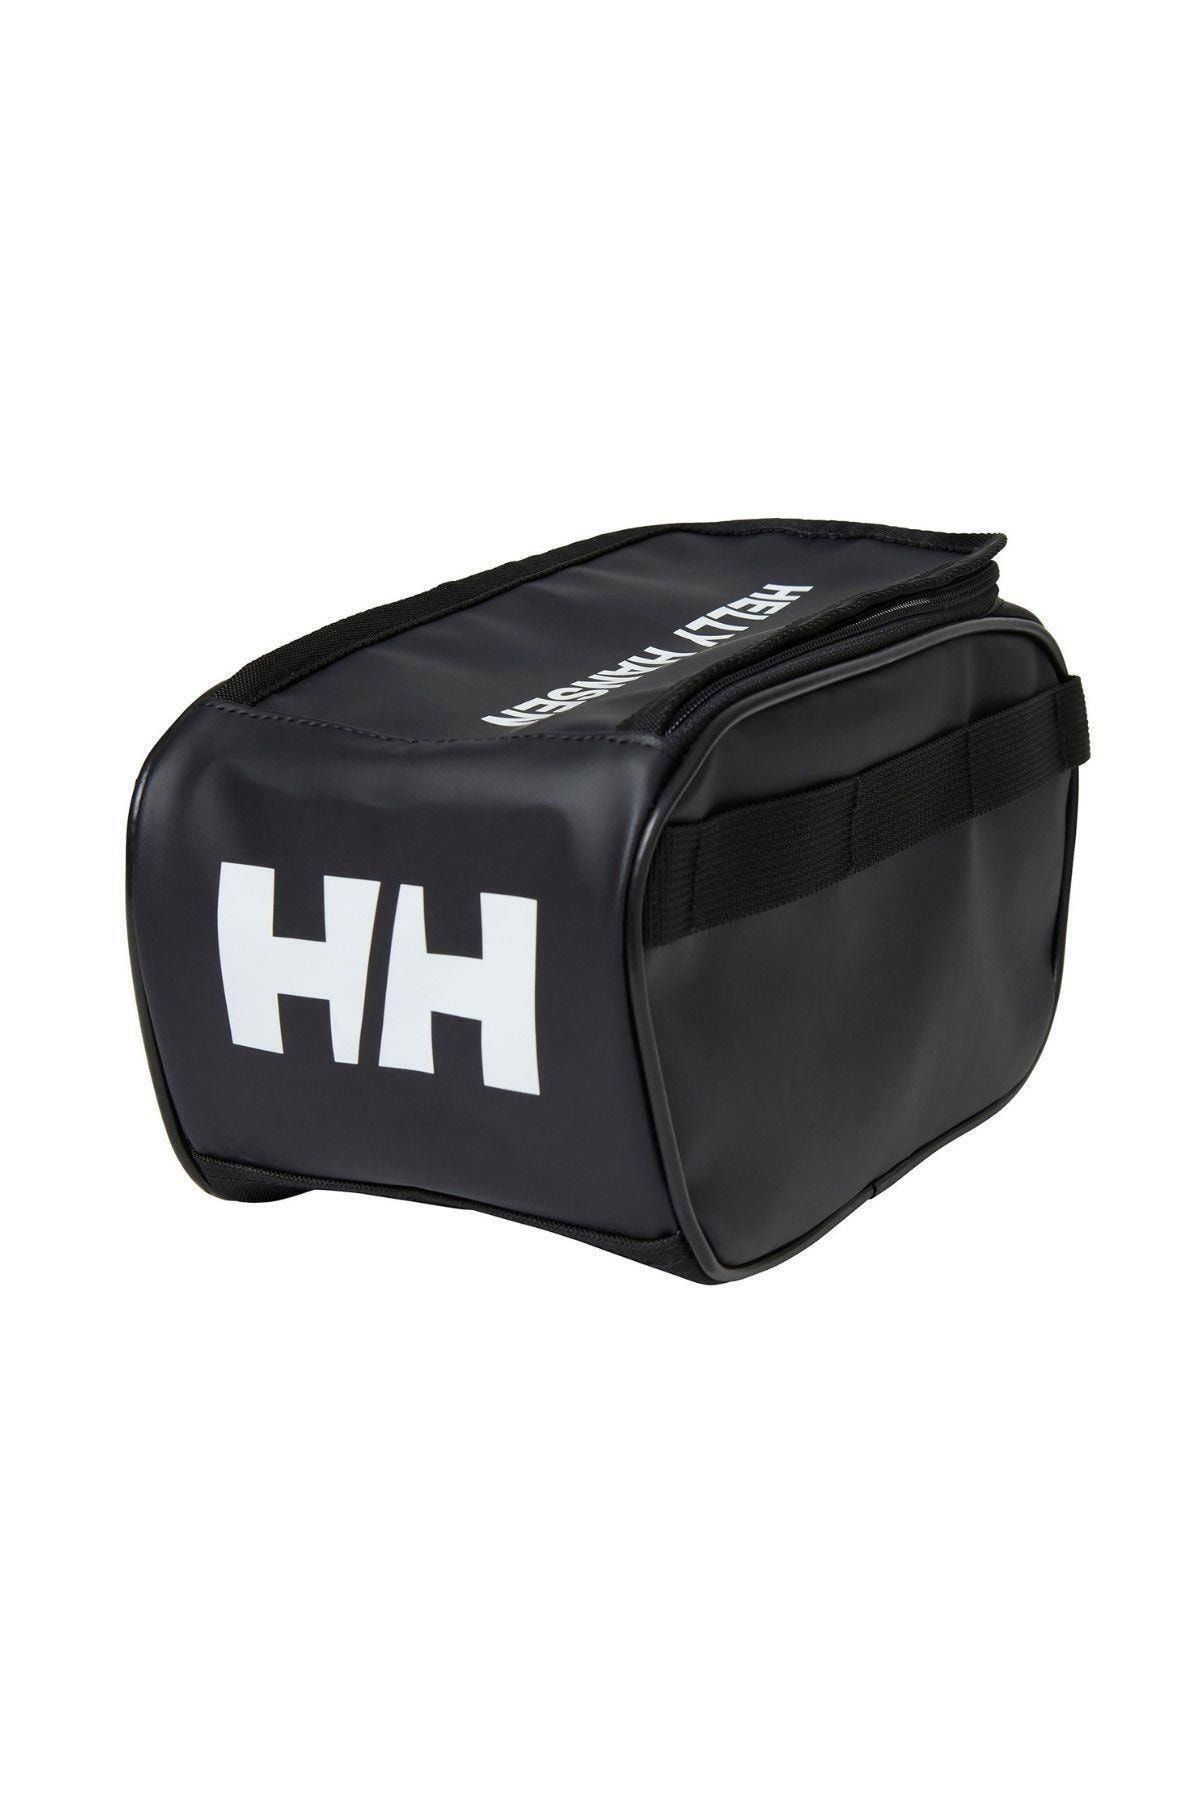 Helly Hansen Hha.67444 - Scout Wash Bag